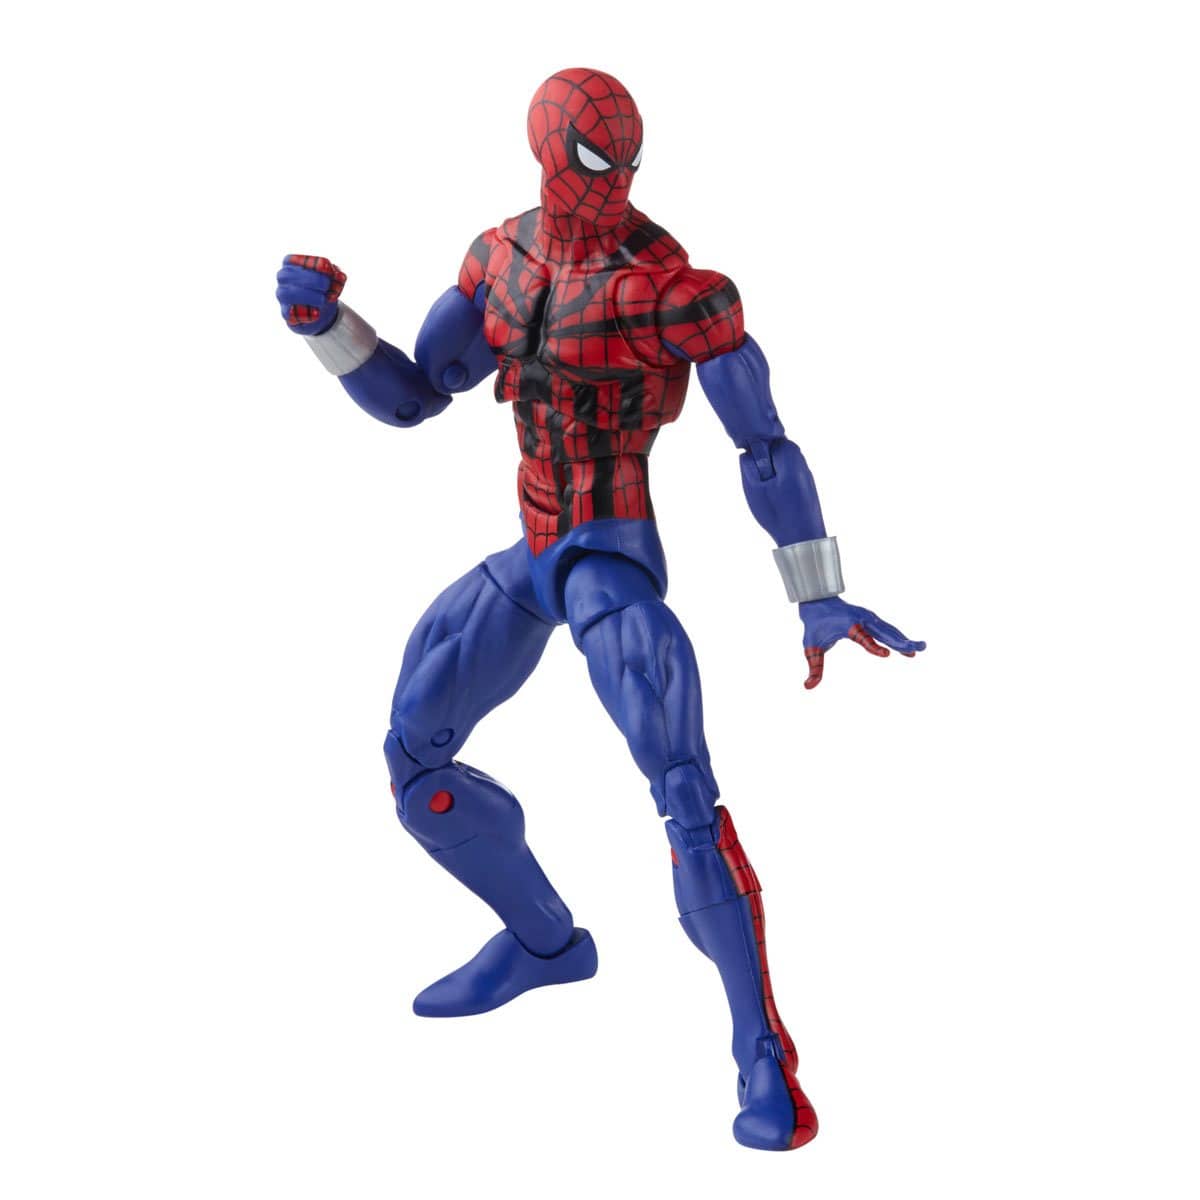 Spider-Man Retro Marvel Legends Legends Ben Reilly Spider-Man 6-inch Action Figure Pop-O-Loco